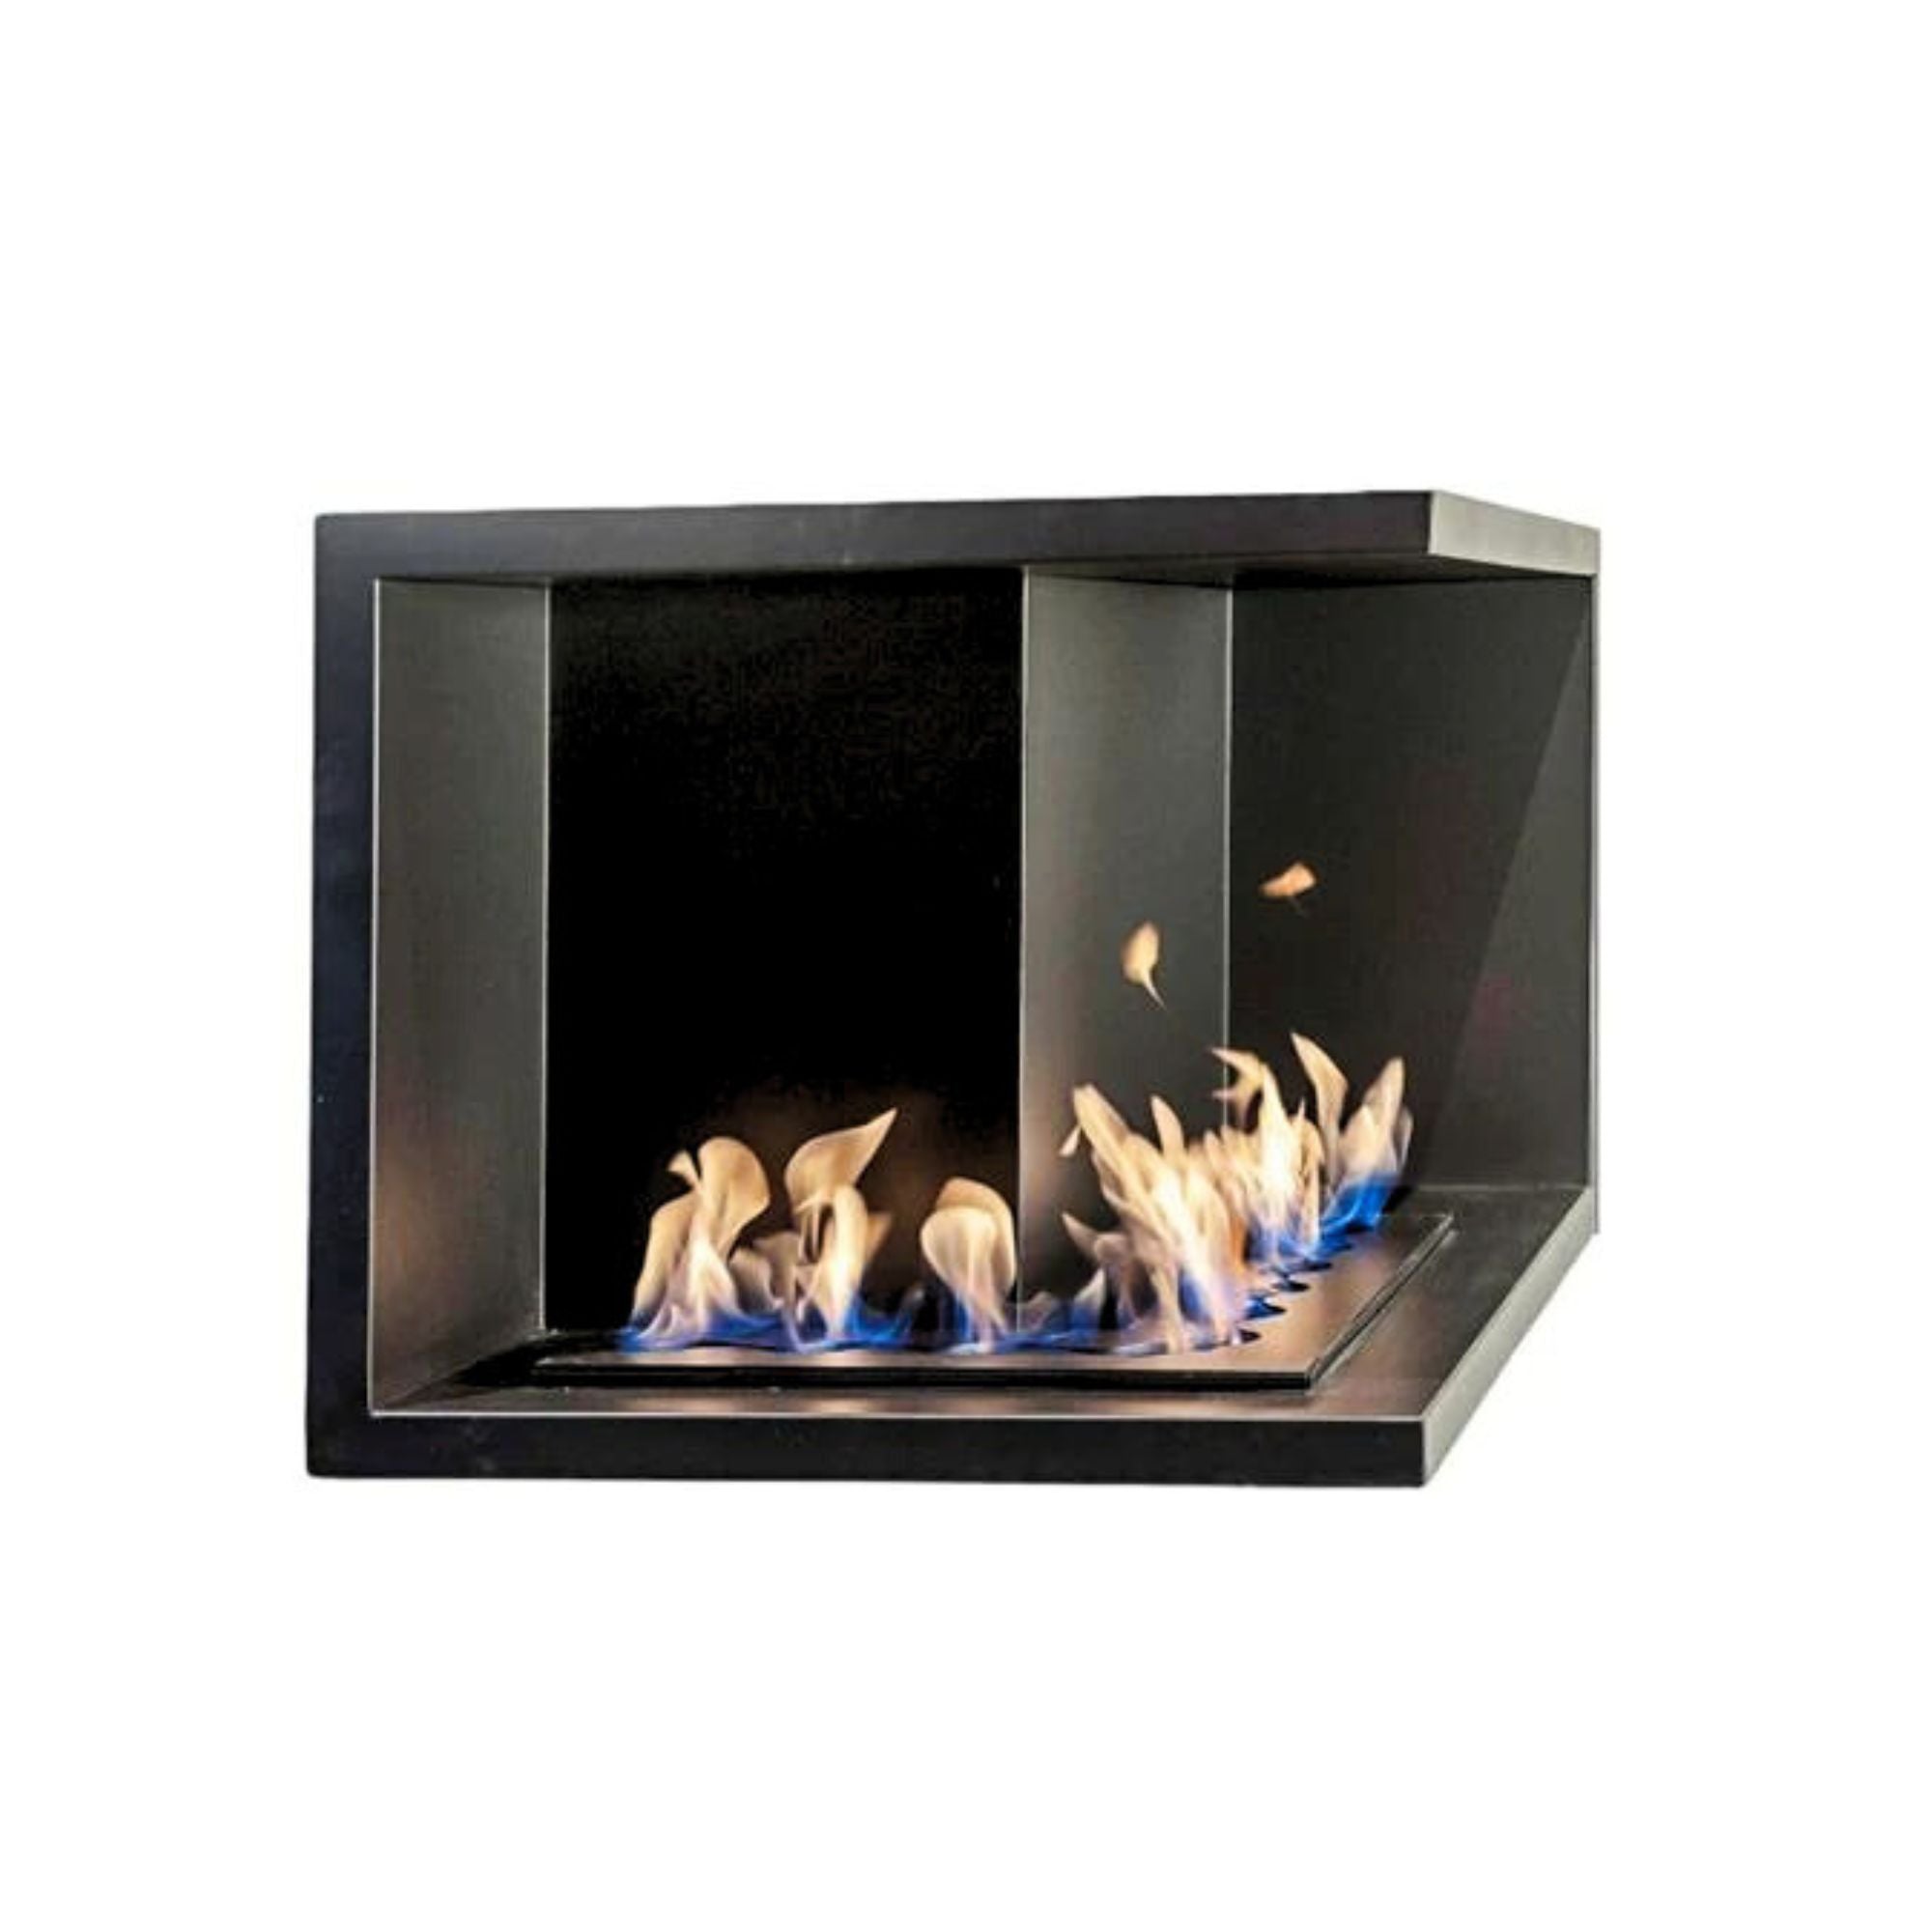 Nila Hoek Ultra Bio Built-in Fireplace